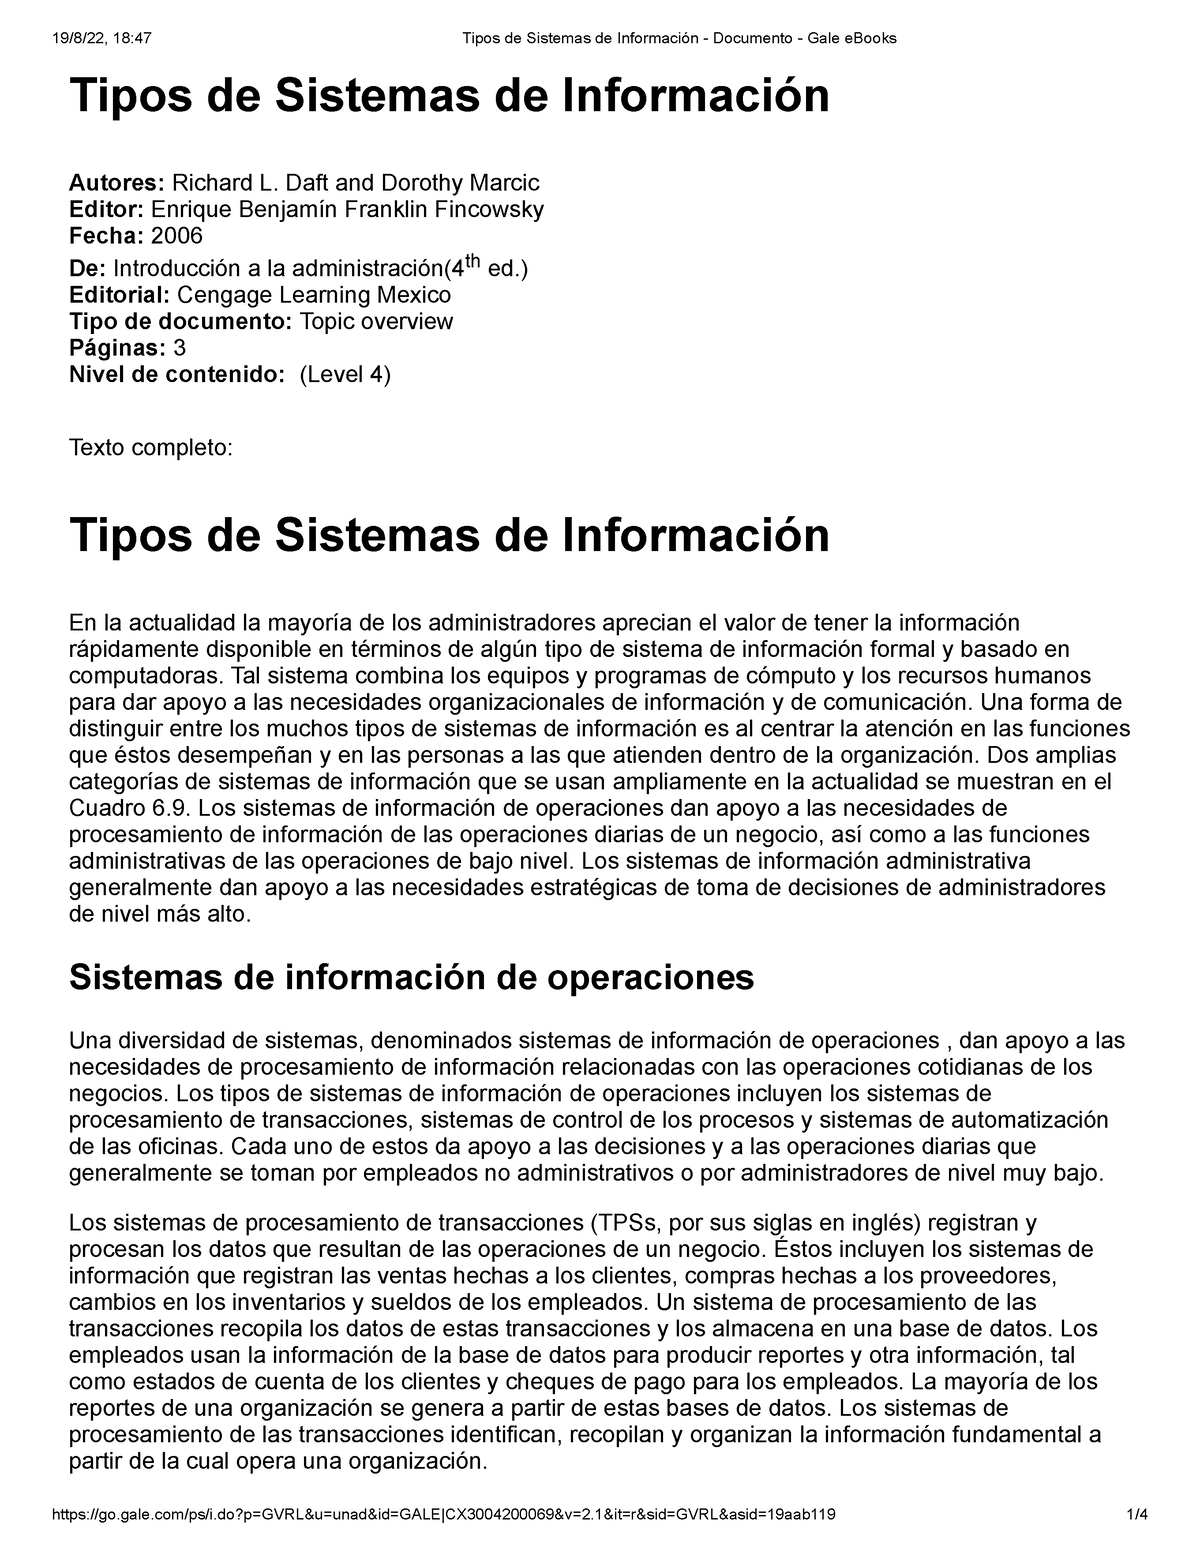 Tipos De Sistemas De Información Tipos De Sistemas De Información Autores Richard L Daft And 5497